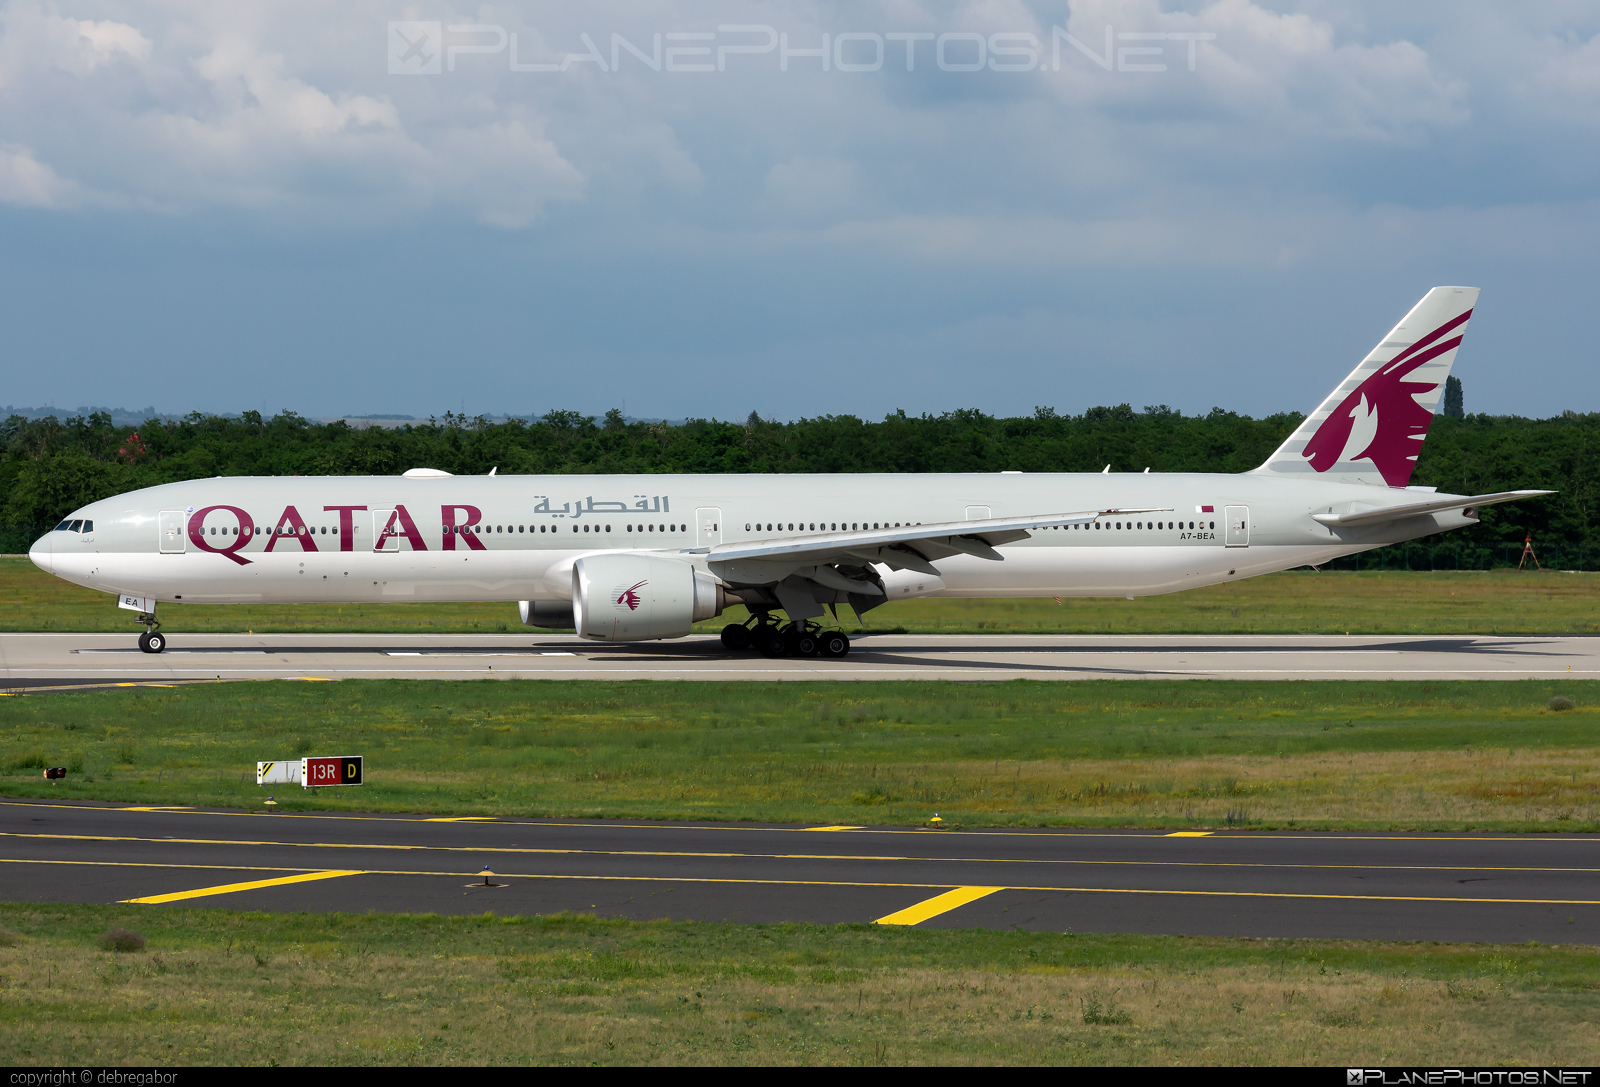 Boeing 777-300ER - A7-BEA operated by Qatar Airways #b777 #b777er #boeing #boeing777 #qatarairways #tripleseven